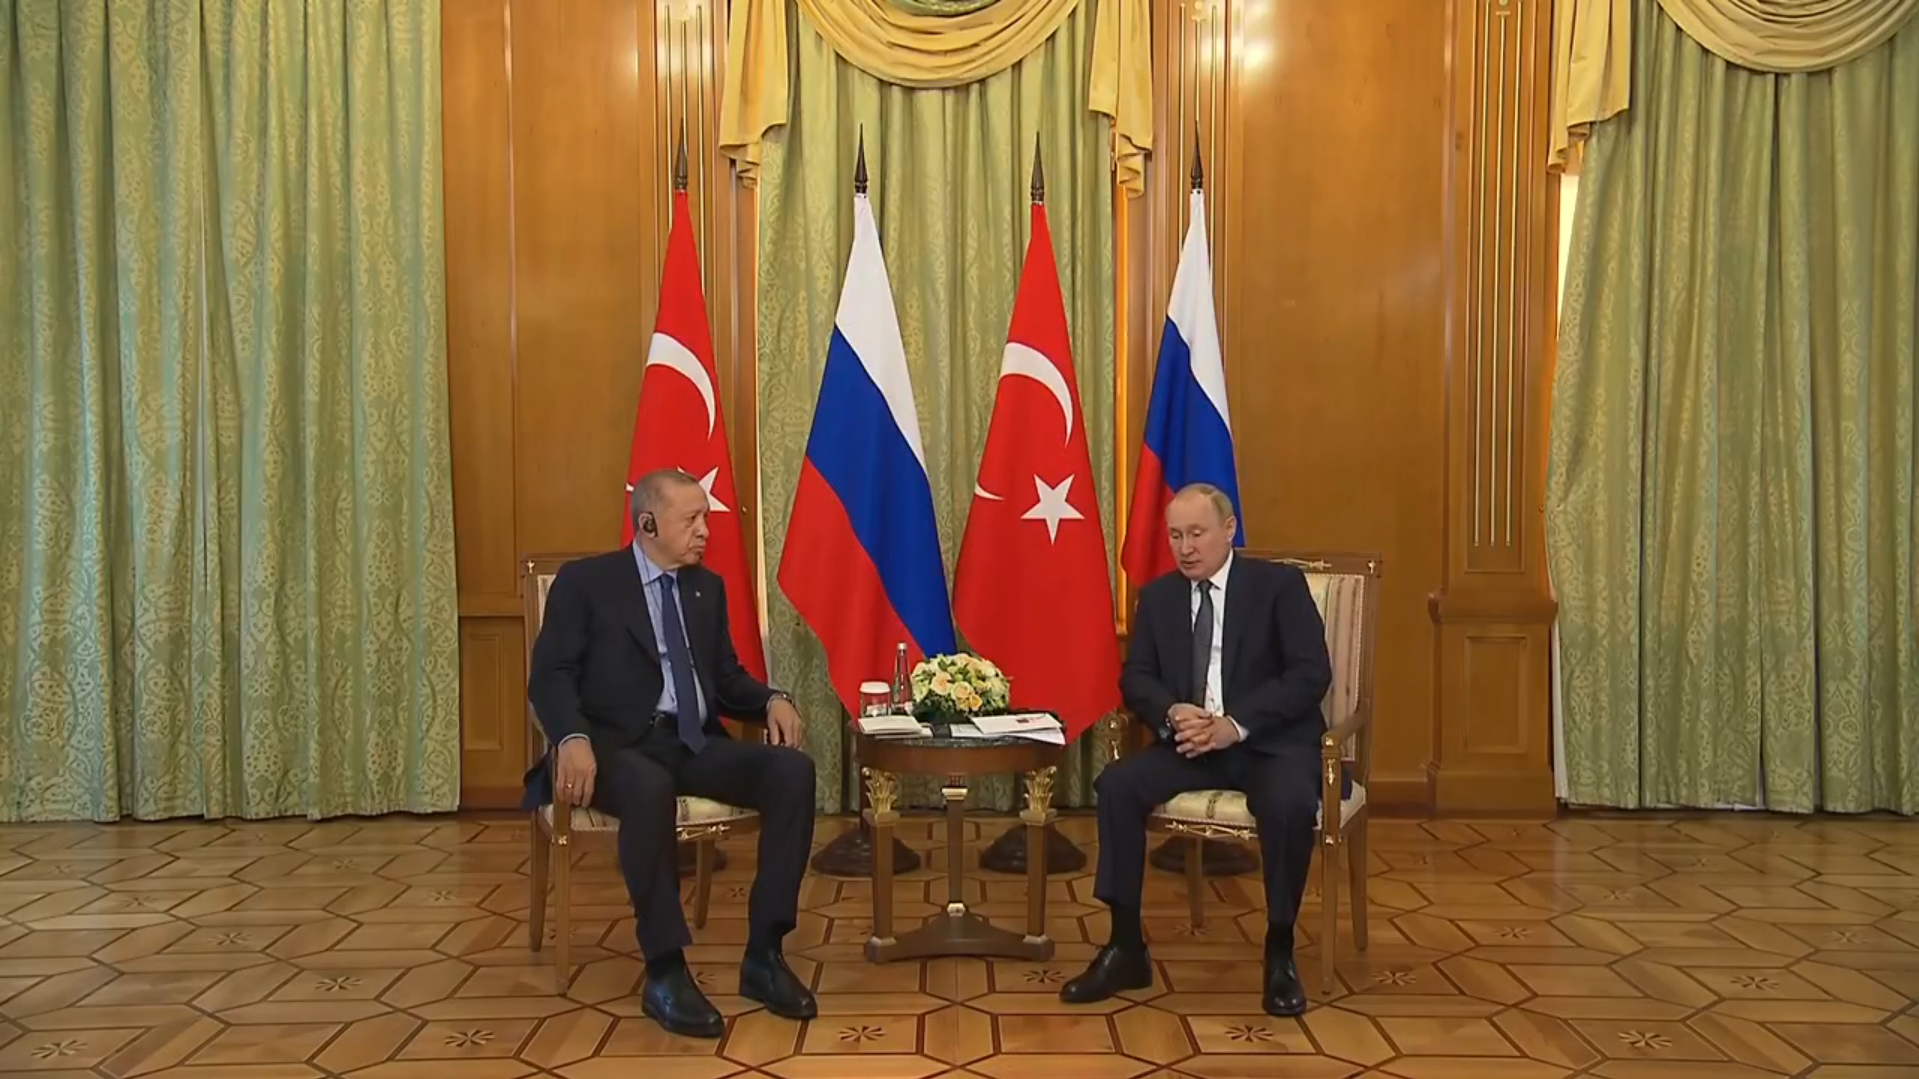 Soçi’de kritik zirve! Cumhurbaşkanı Erdoğan’dan ve Putin’den önemli görüşme